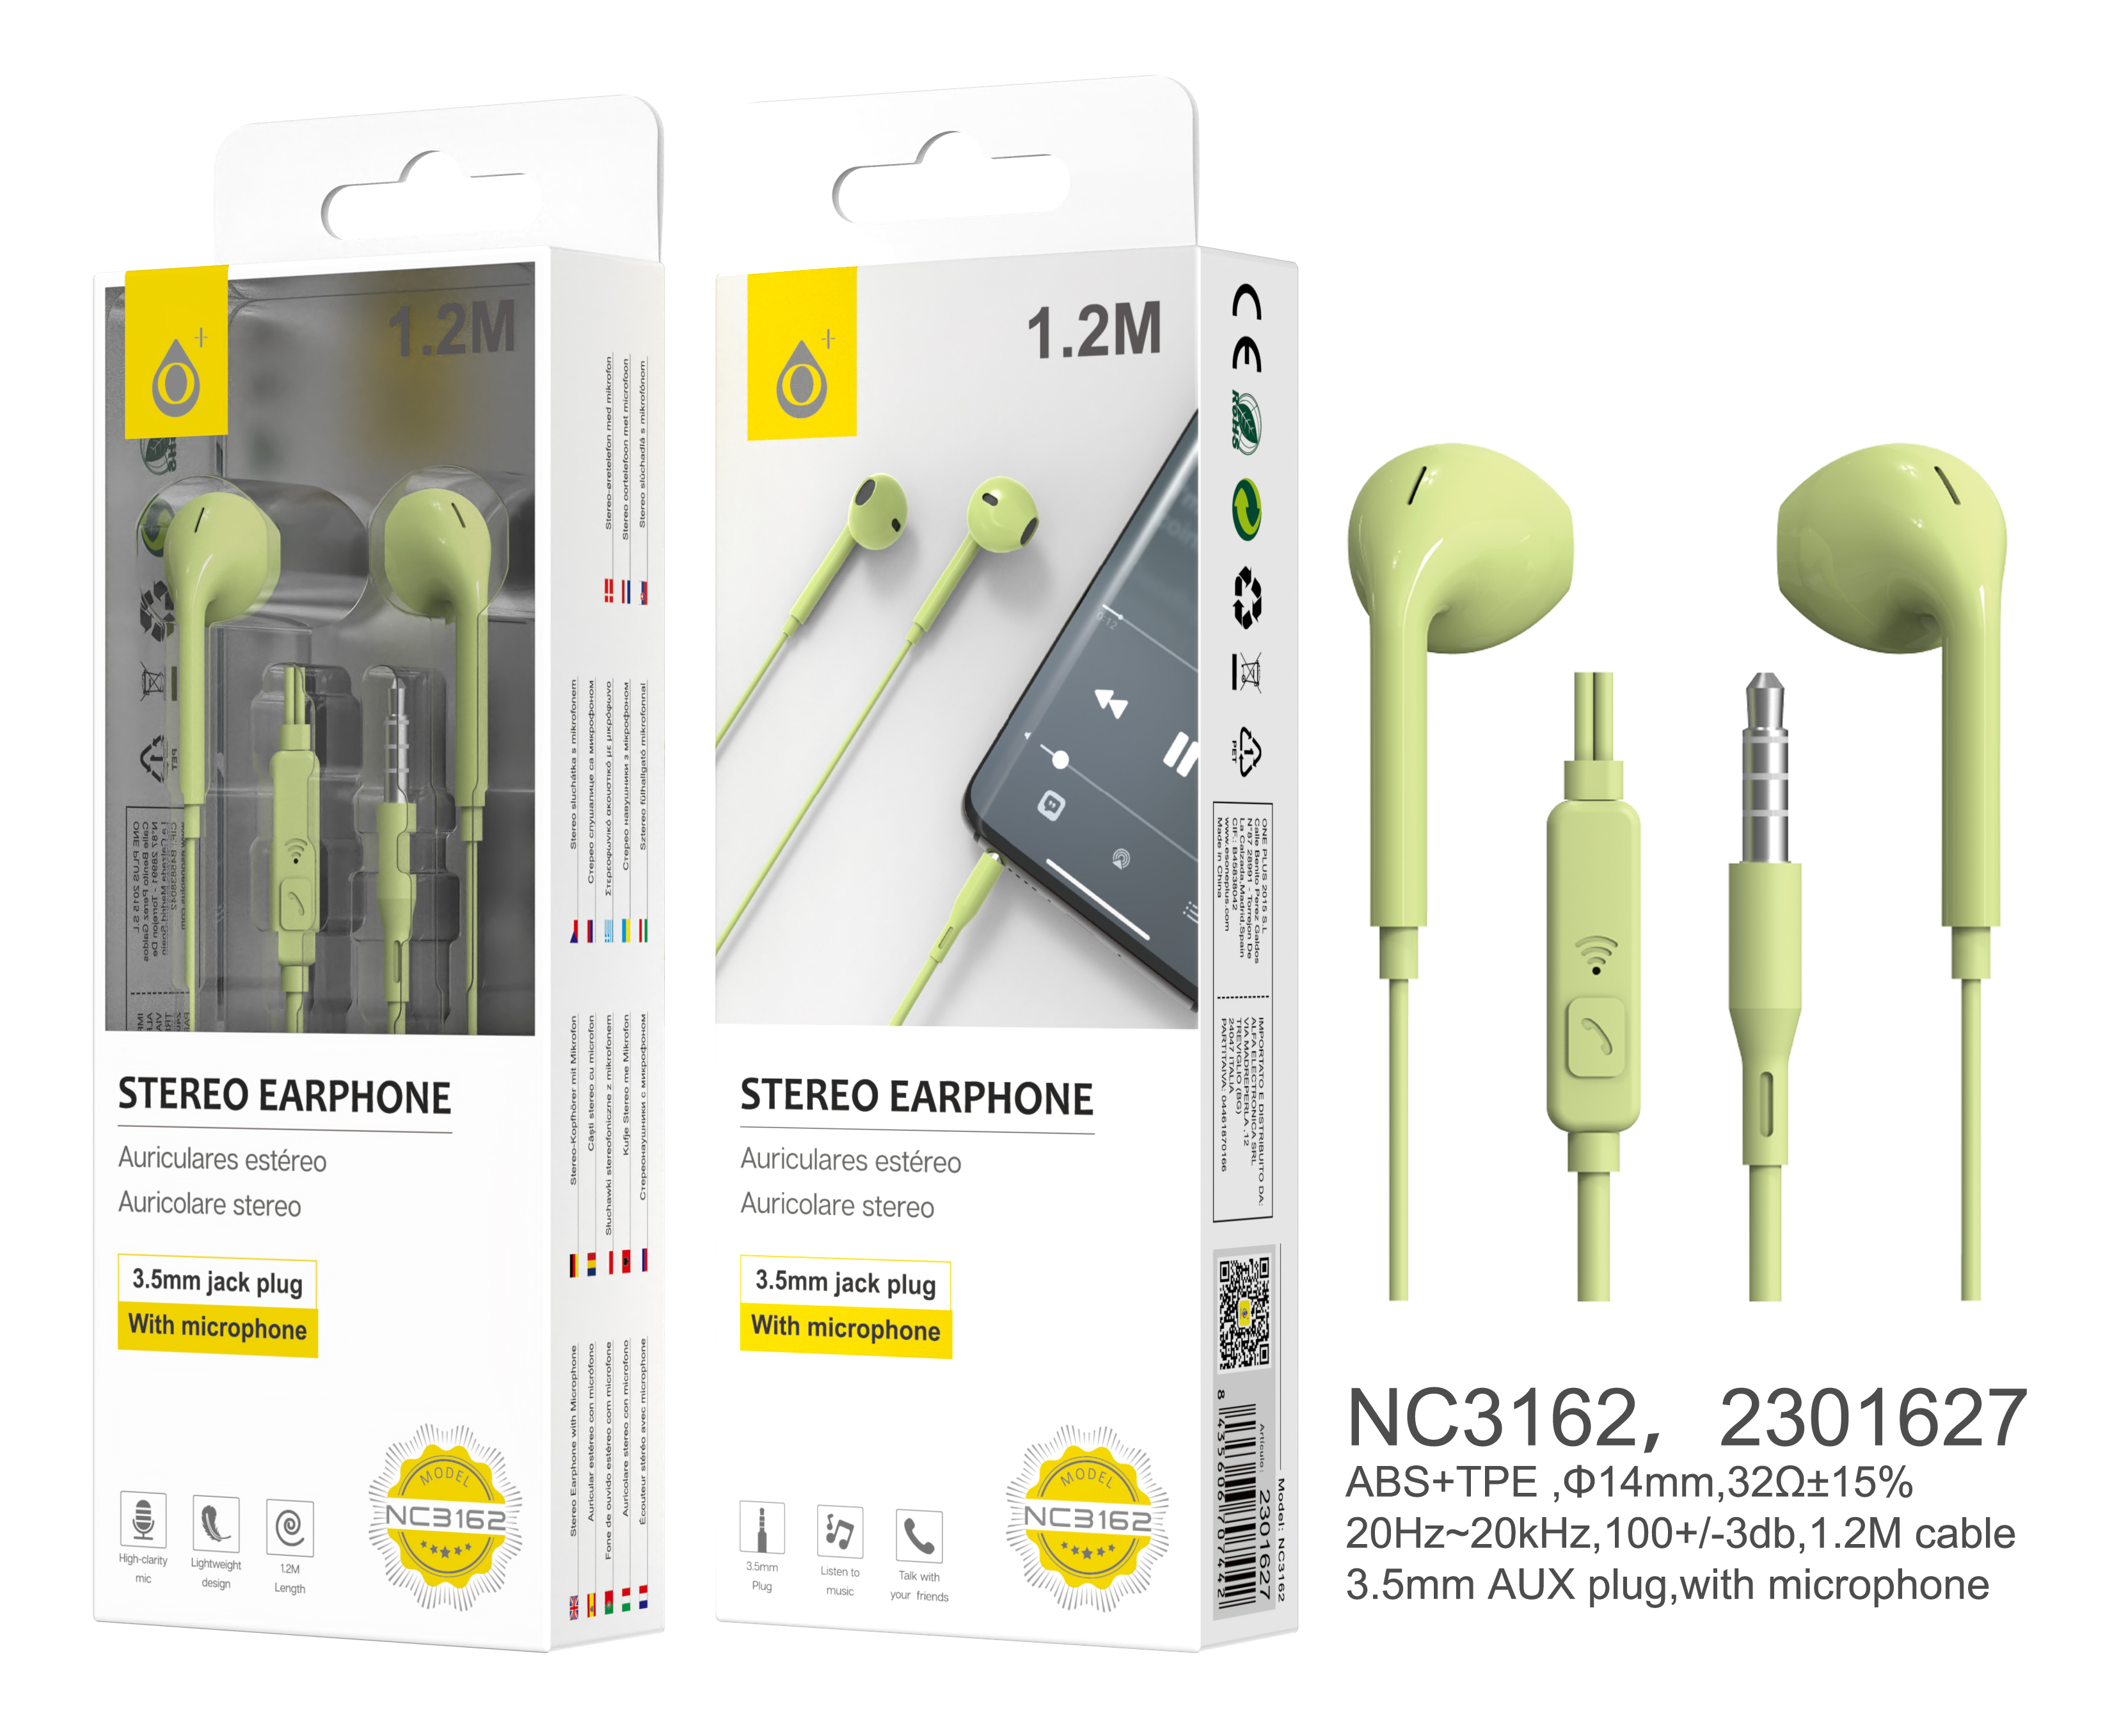 NC3162 VE Auriculares Speedy con Microfono y Boton Multifuncion, 1.2M,Verde